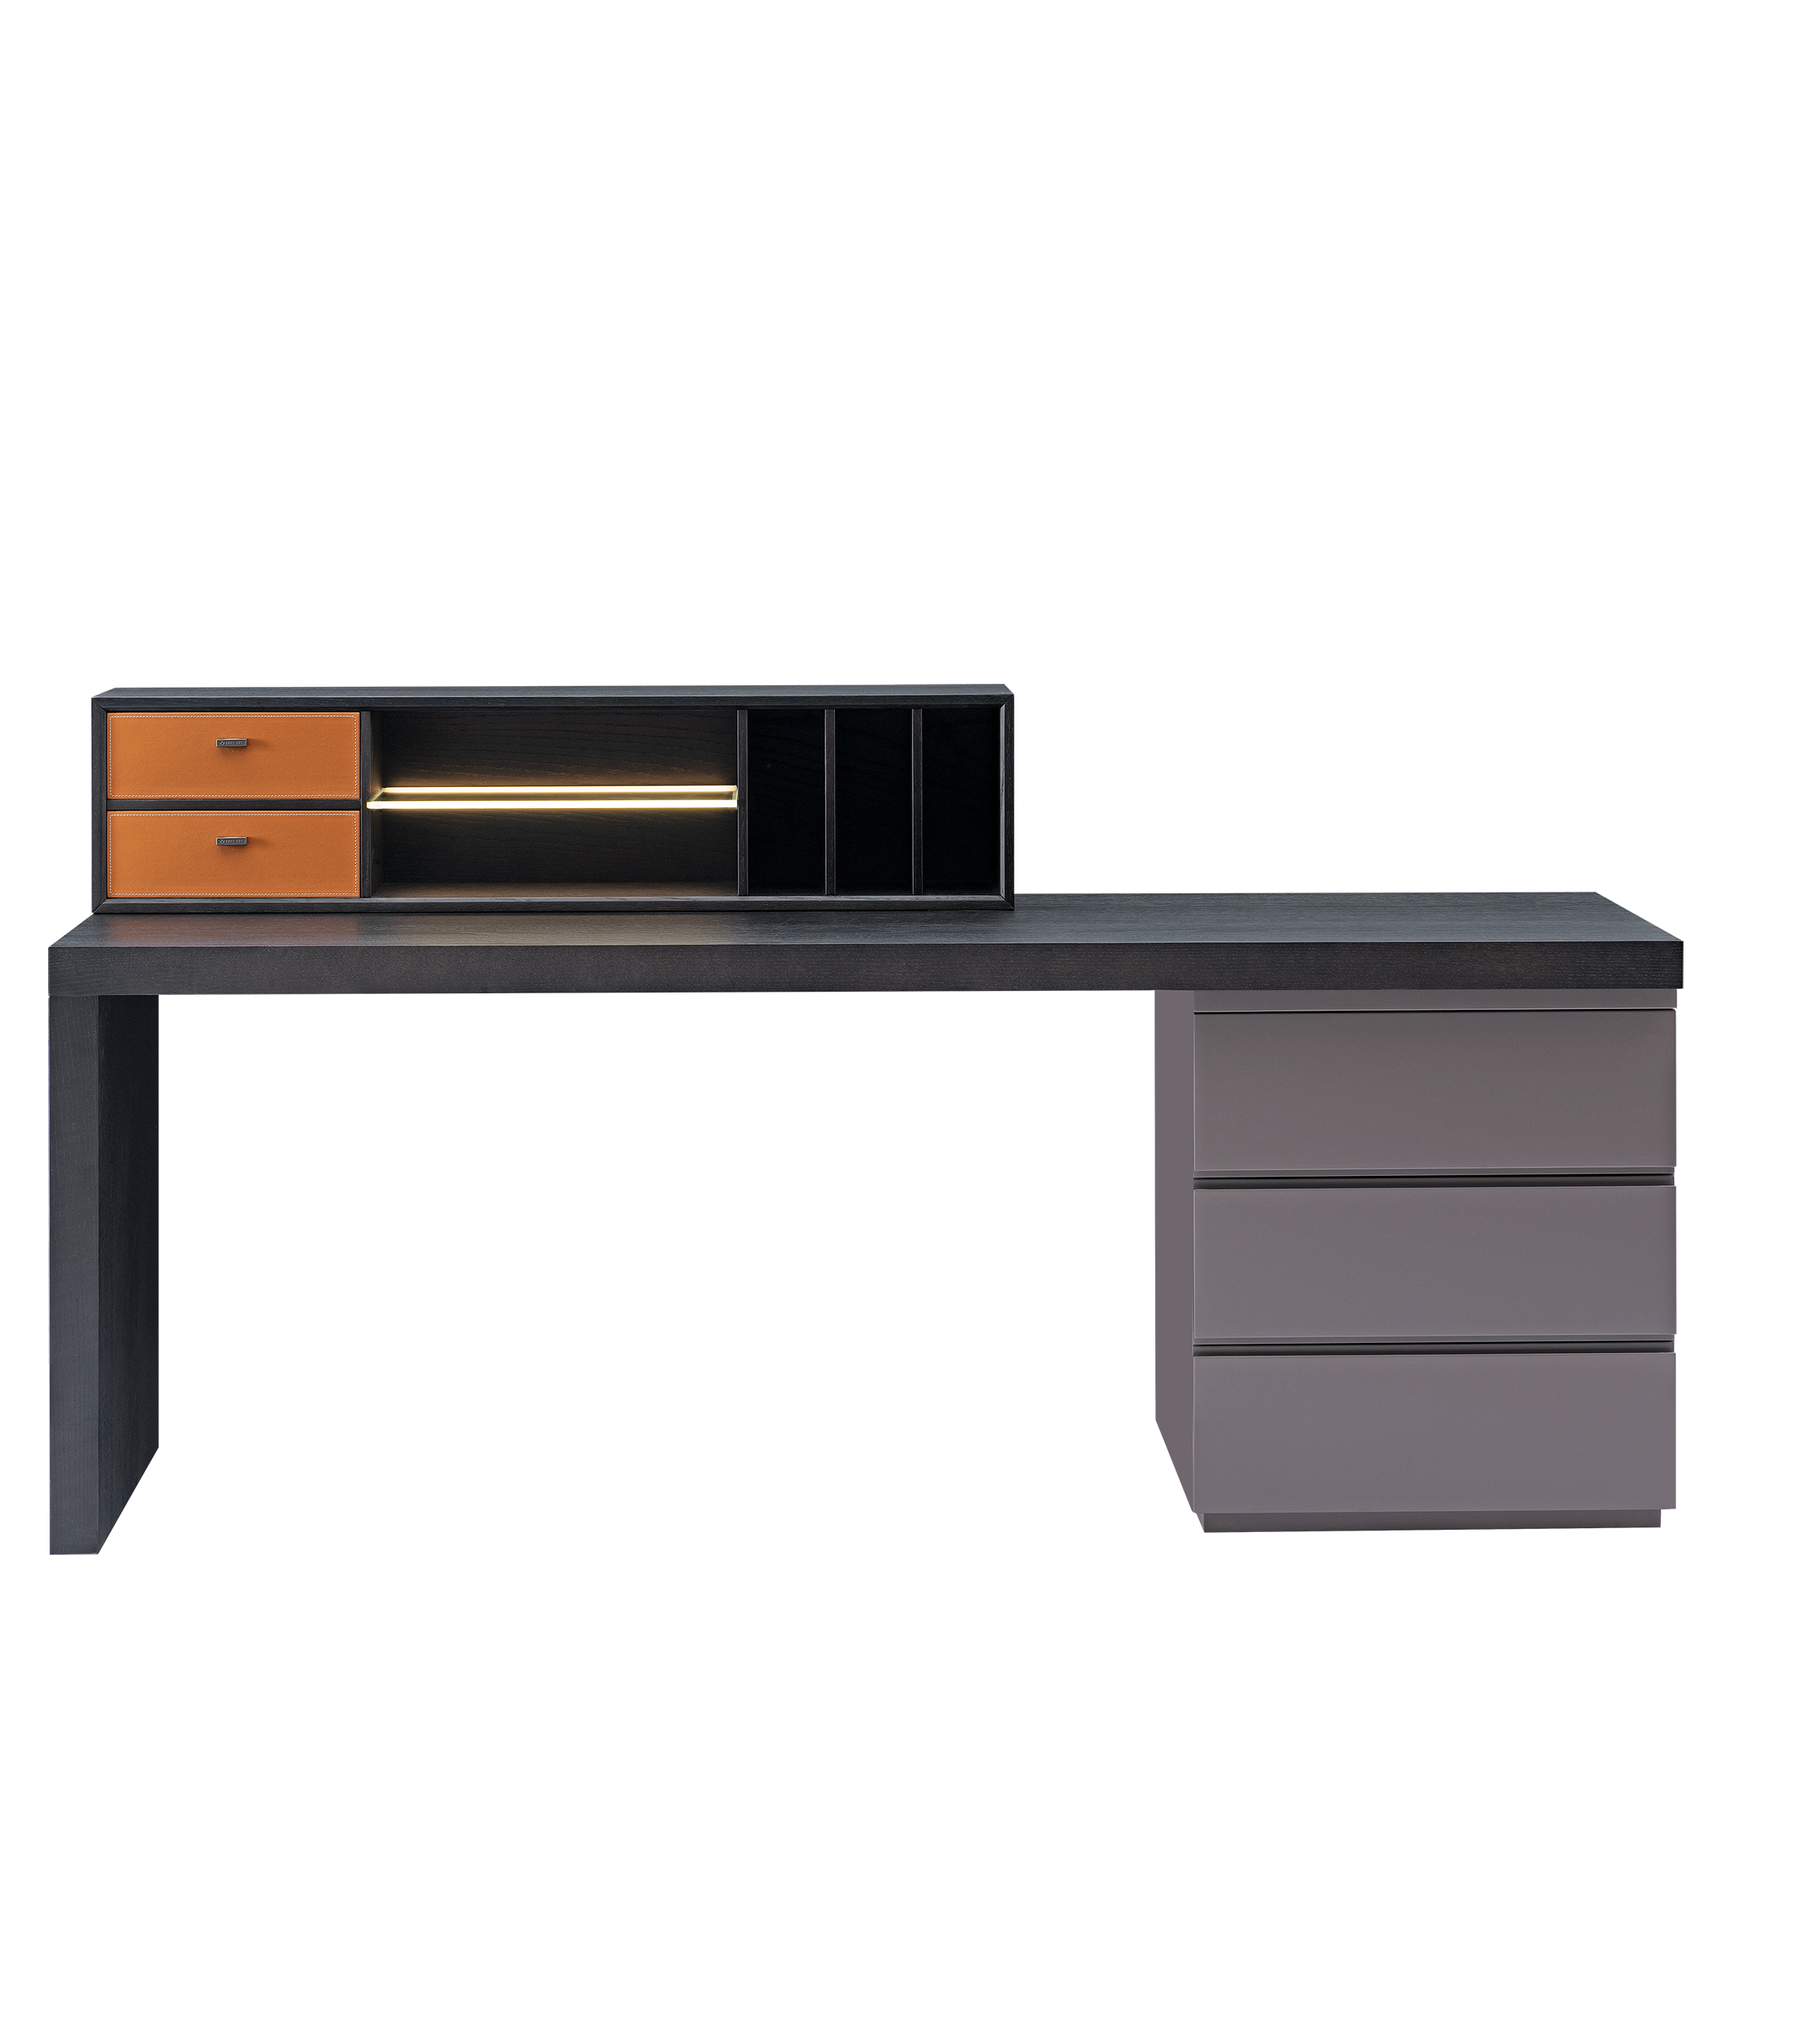 Professional Dresser Desk | Dresser Desk Made In China